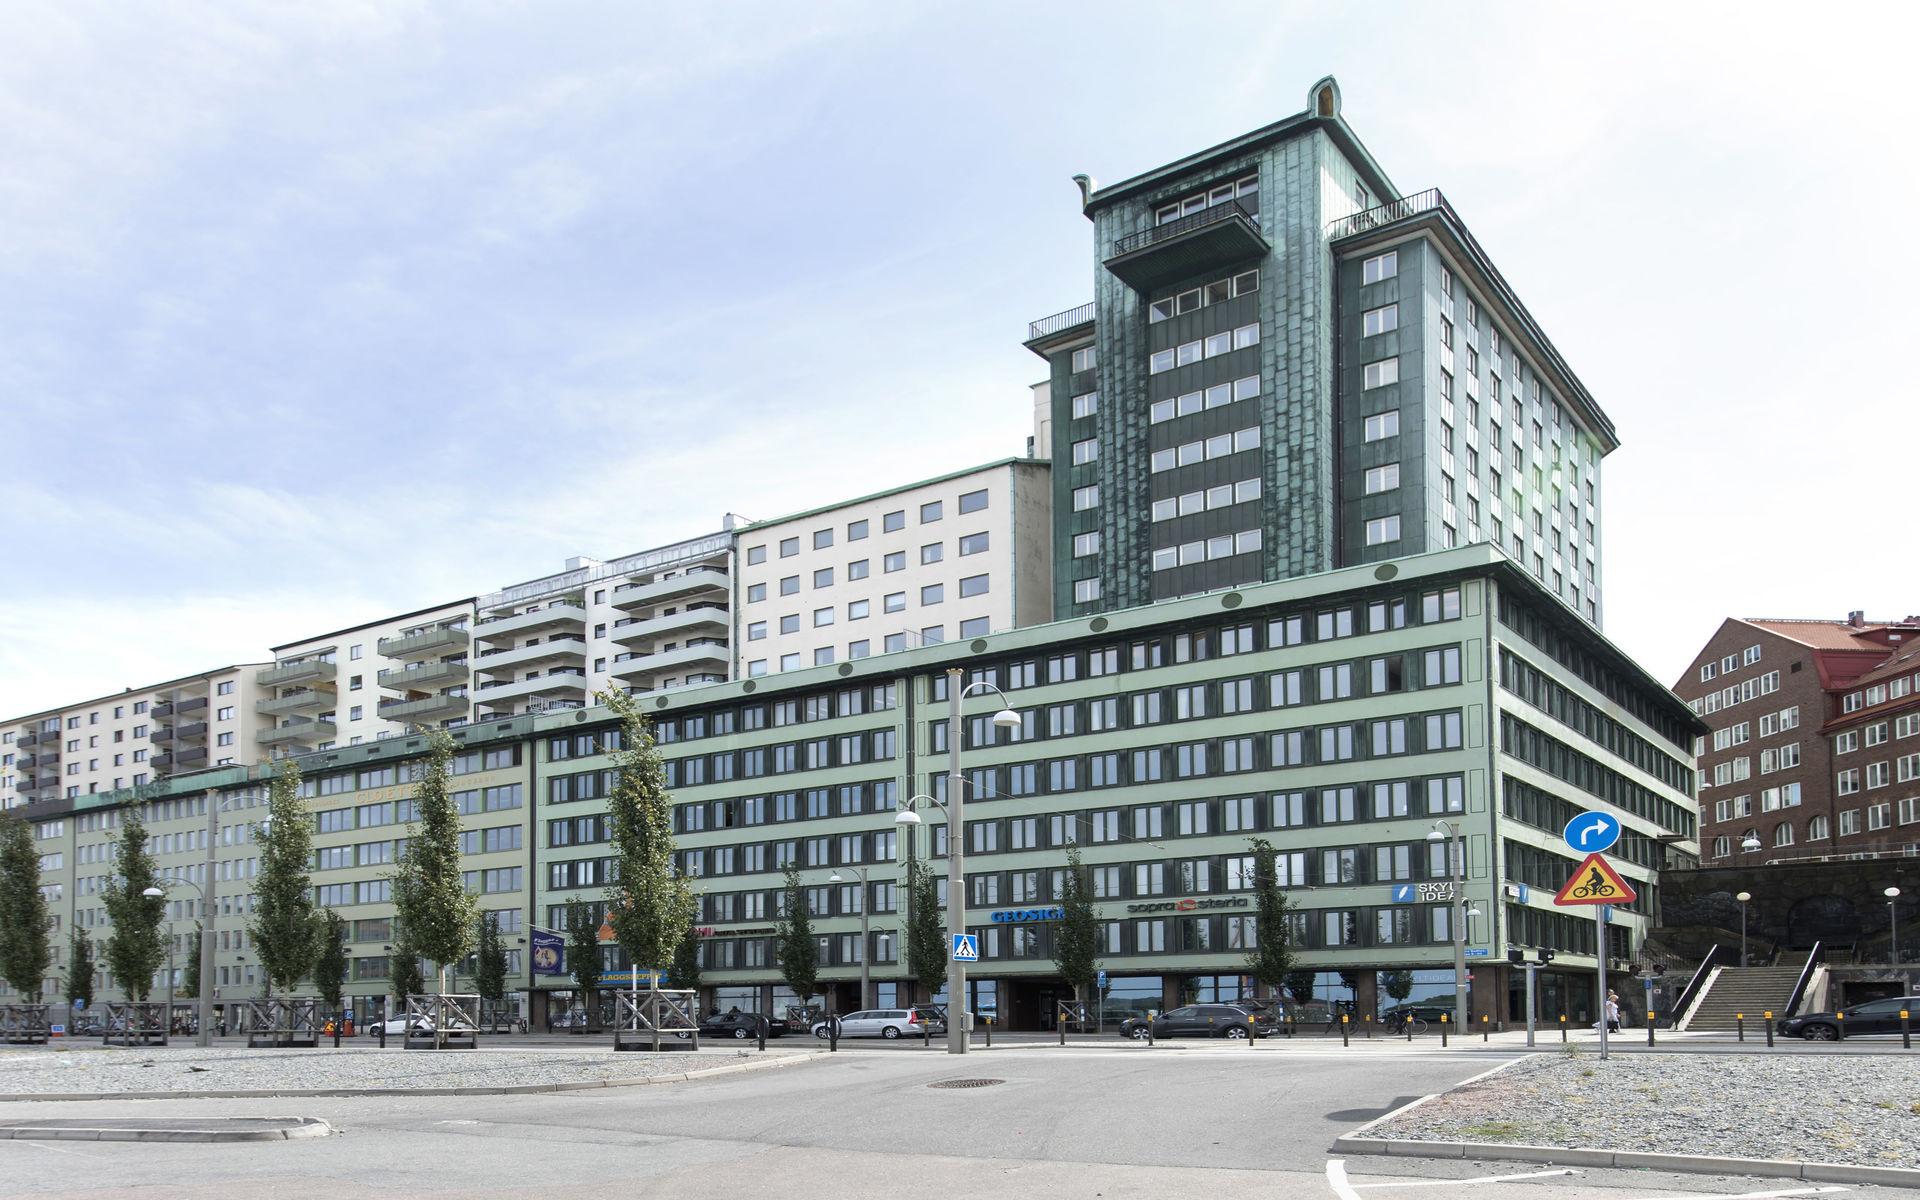 Otterhall invigdes redan 1929 och med sin insprängda position kan det vara lite svårt att förstå att det är en av Göteborgs högsta byggnader. Men den är faktiskt runt 65 meter hög.